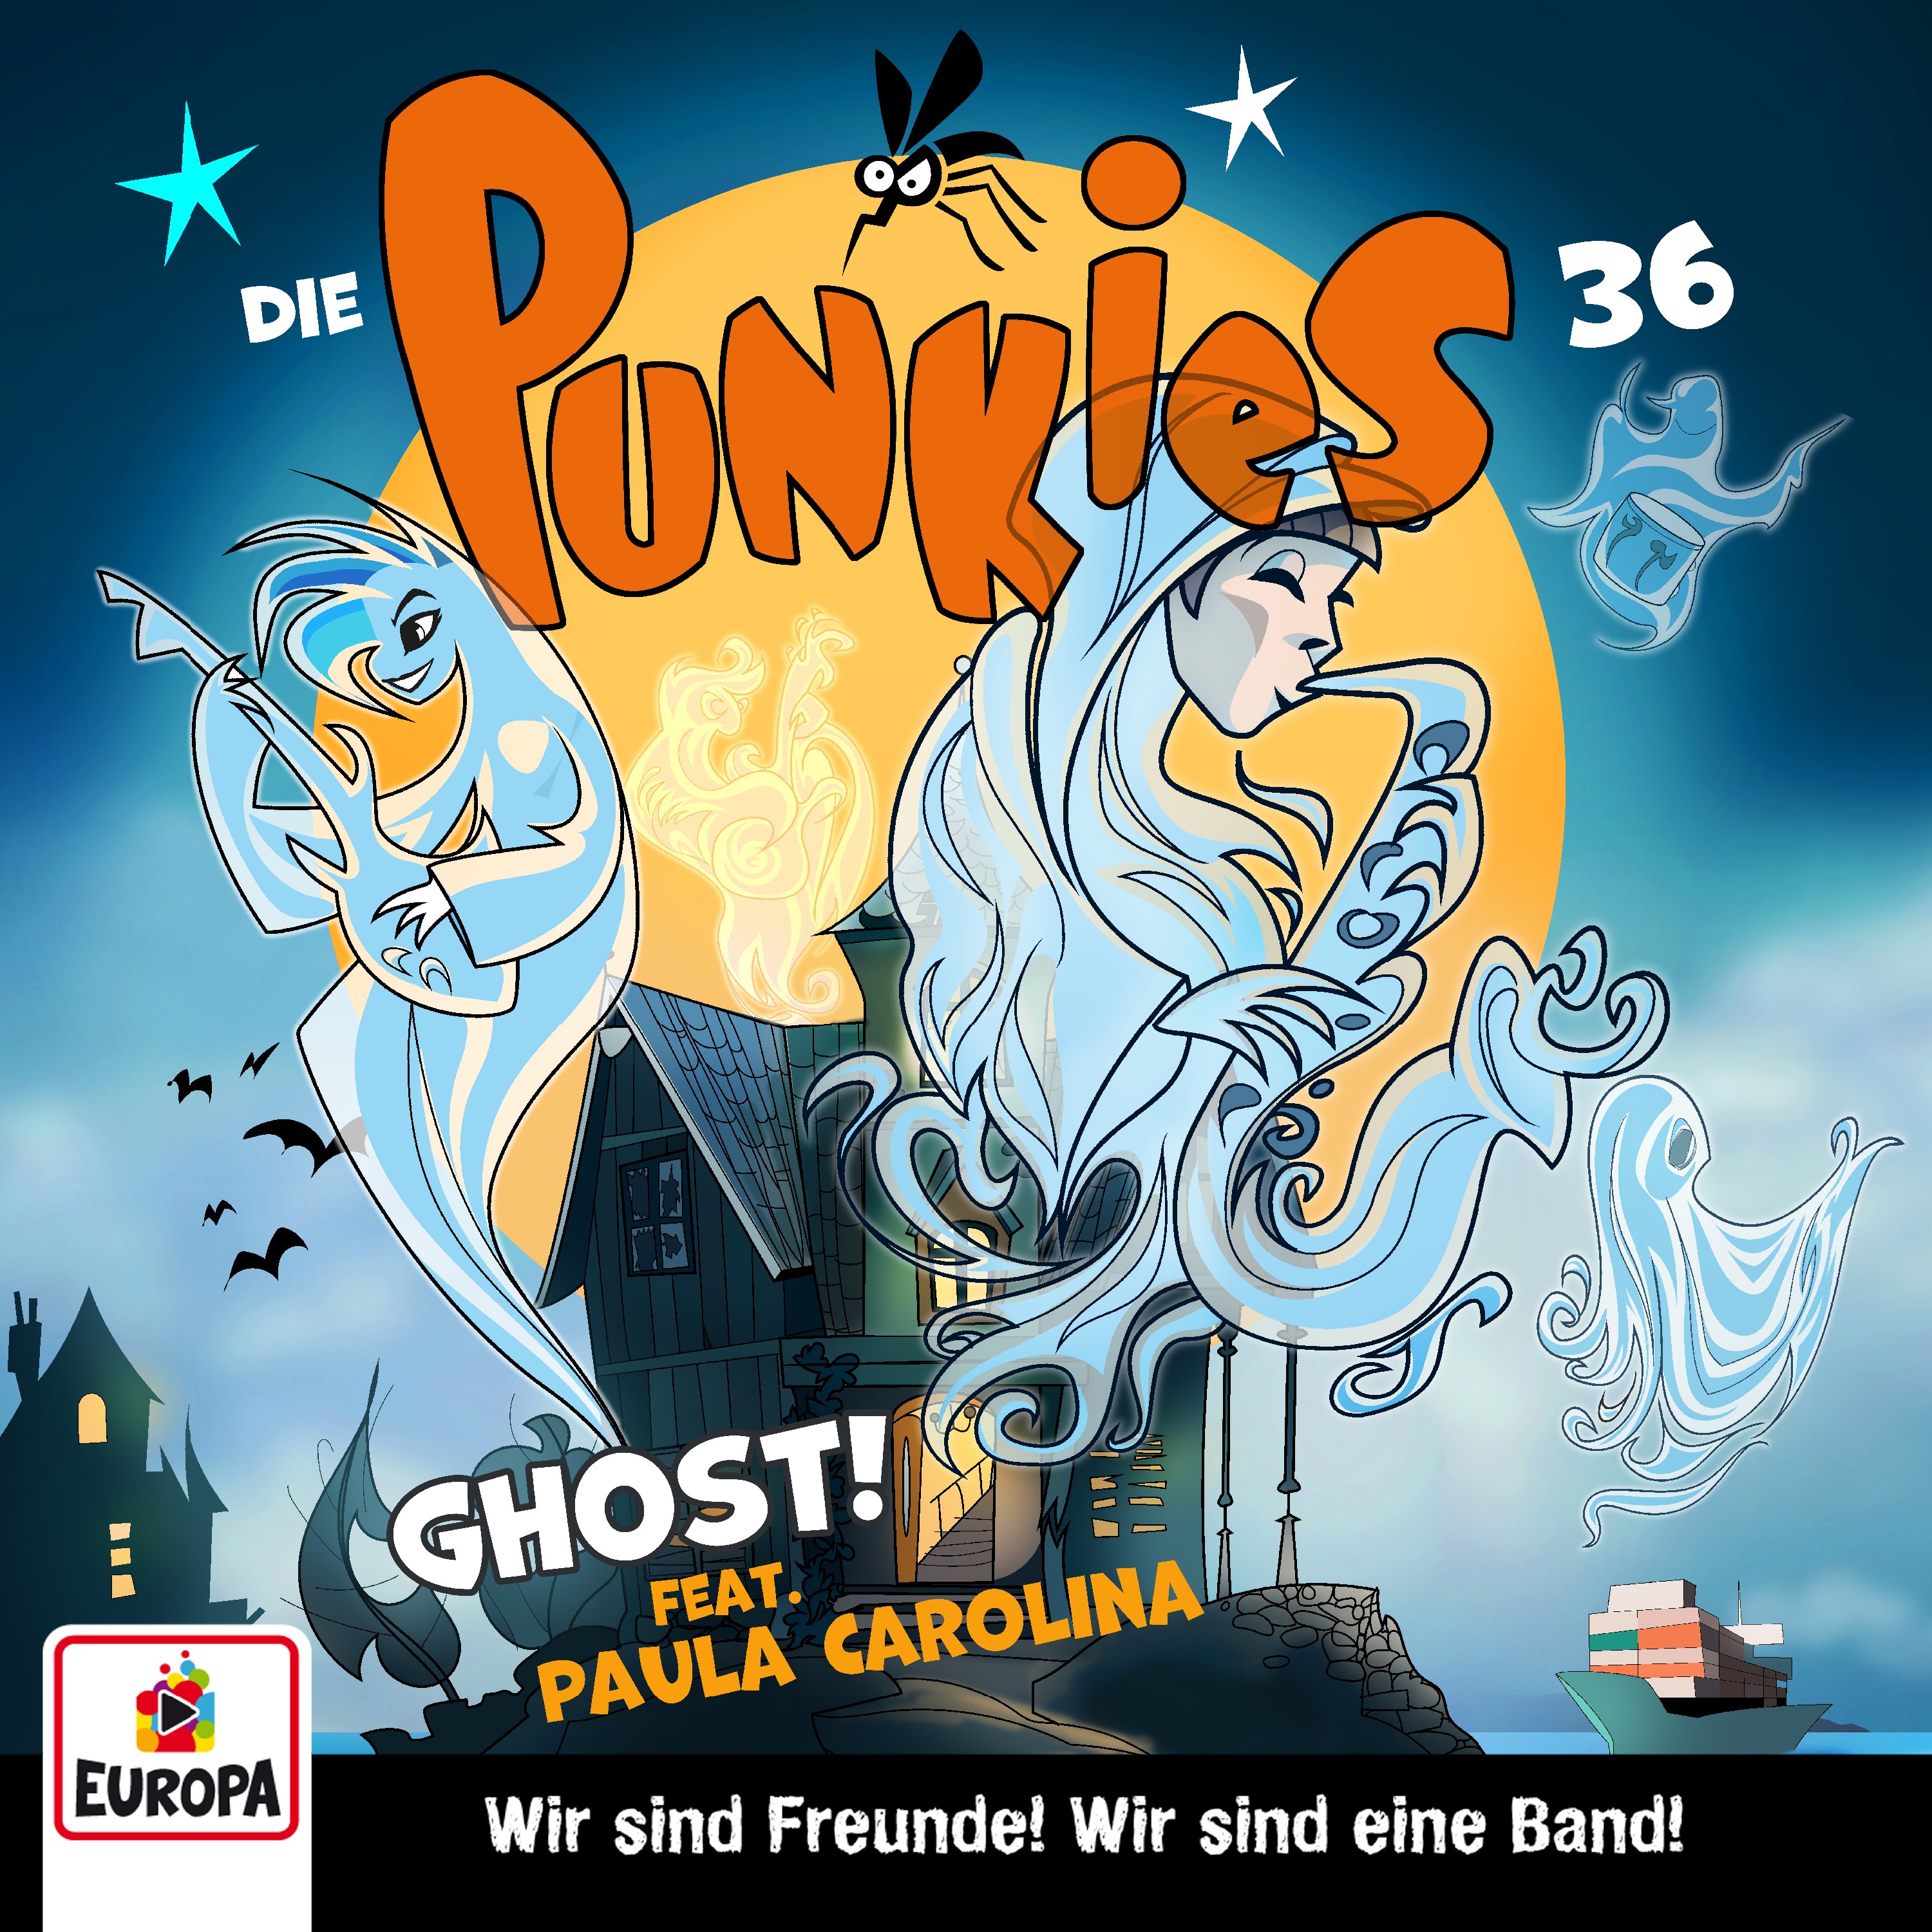 Die Punkies  - Ghost! 